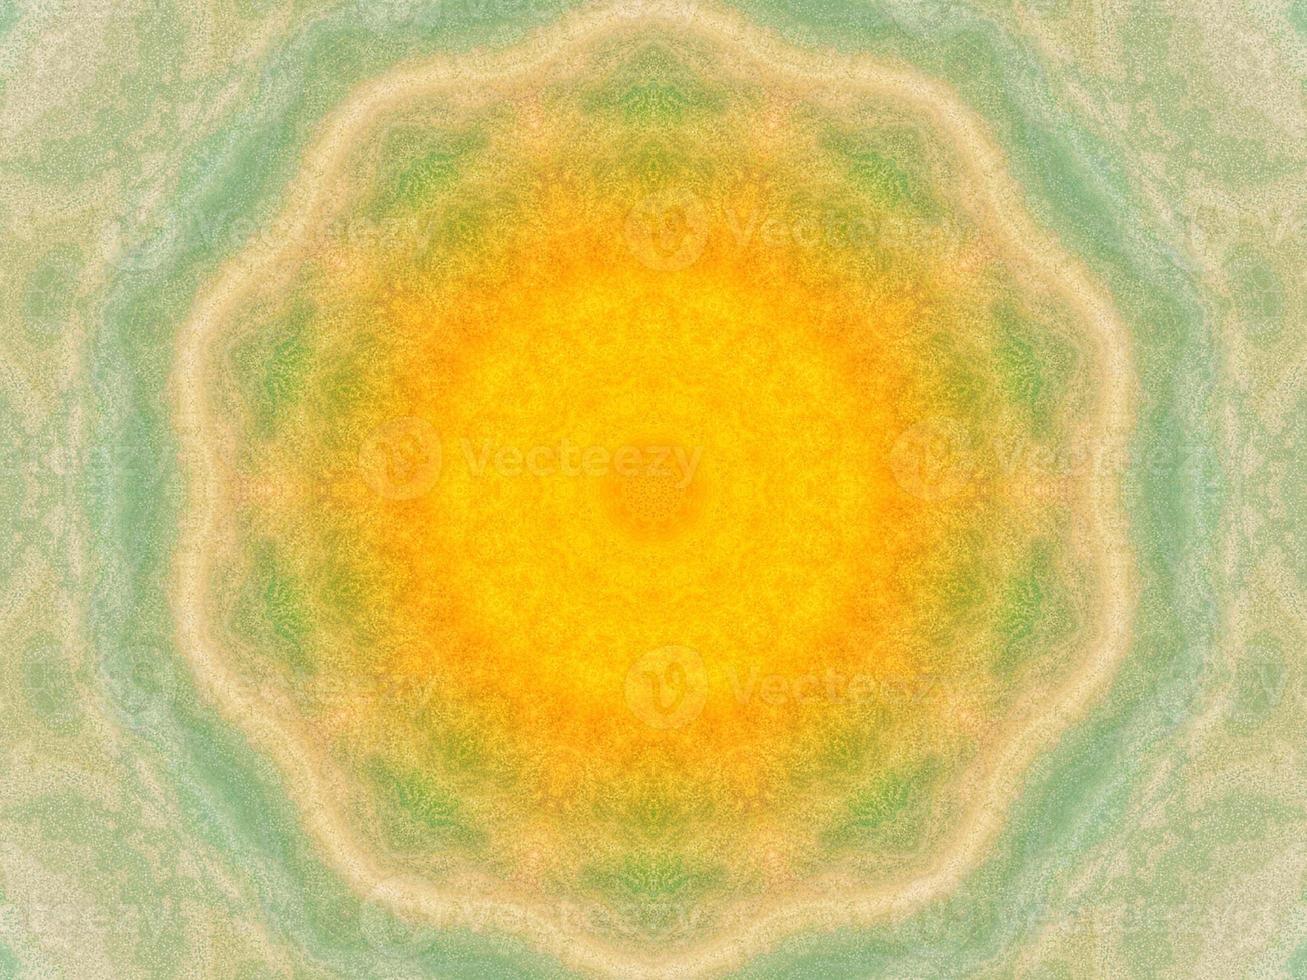 färgrik gul och blå ljus kalejdoskop bakgrund abstrakt blomma och symmetrisk mönster foto